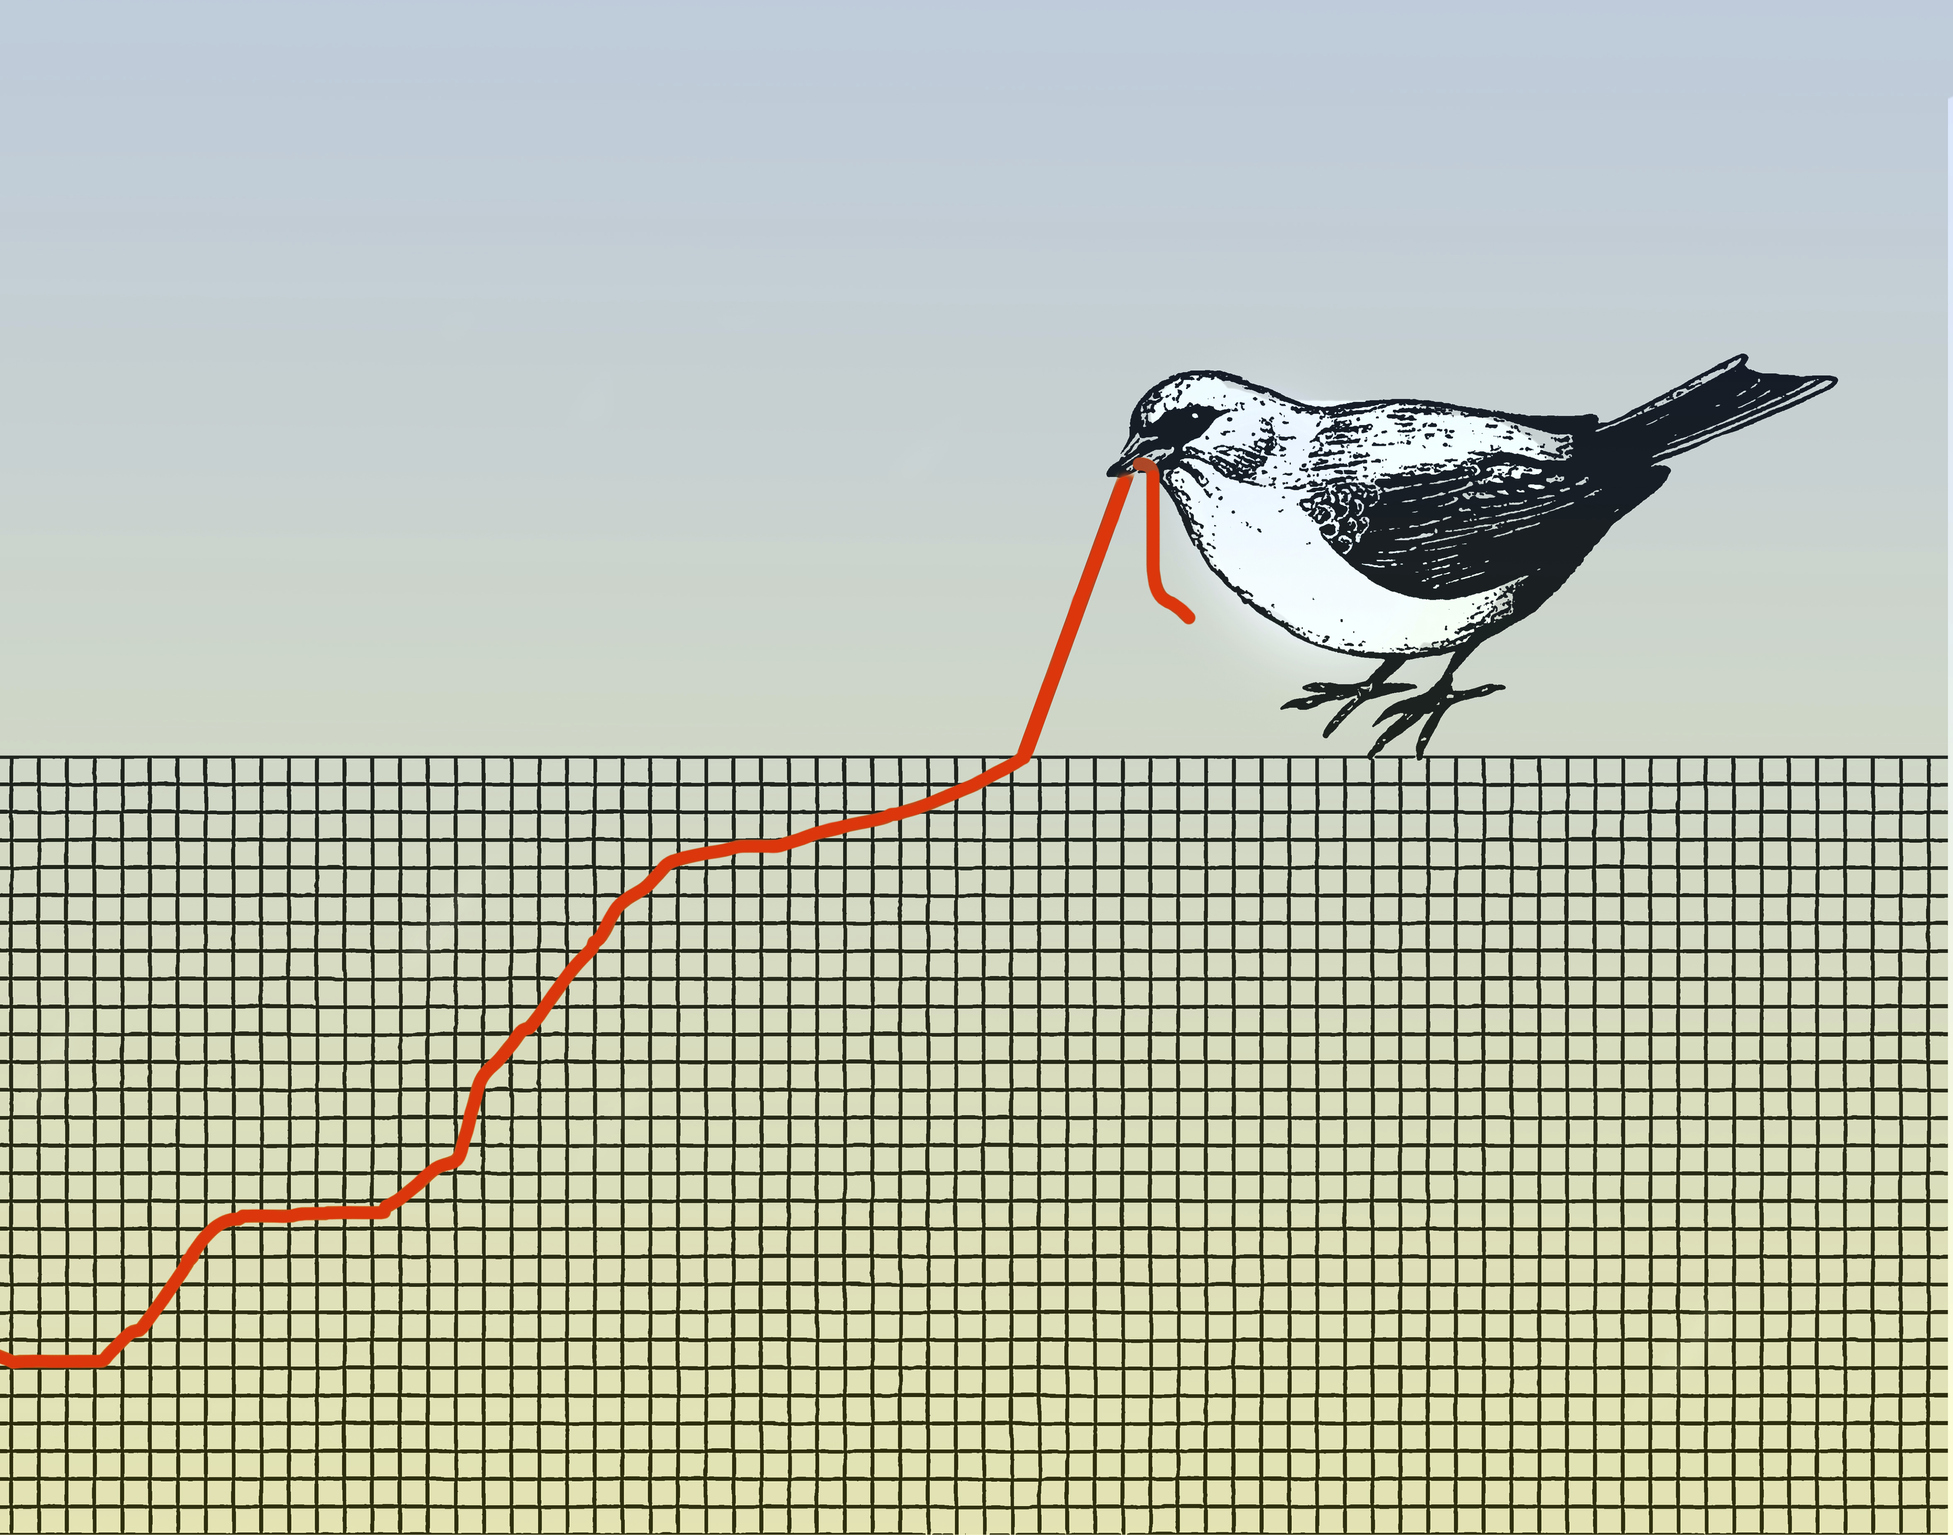 Ilustración conceptual de un pájaro tirando de un gráfico que se parece a un gusano que representa la lucha.